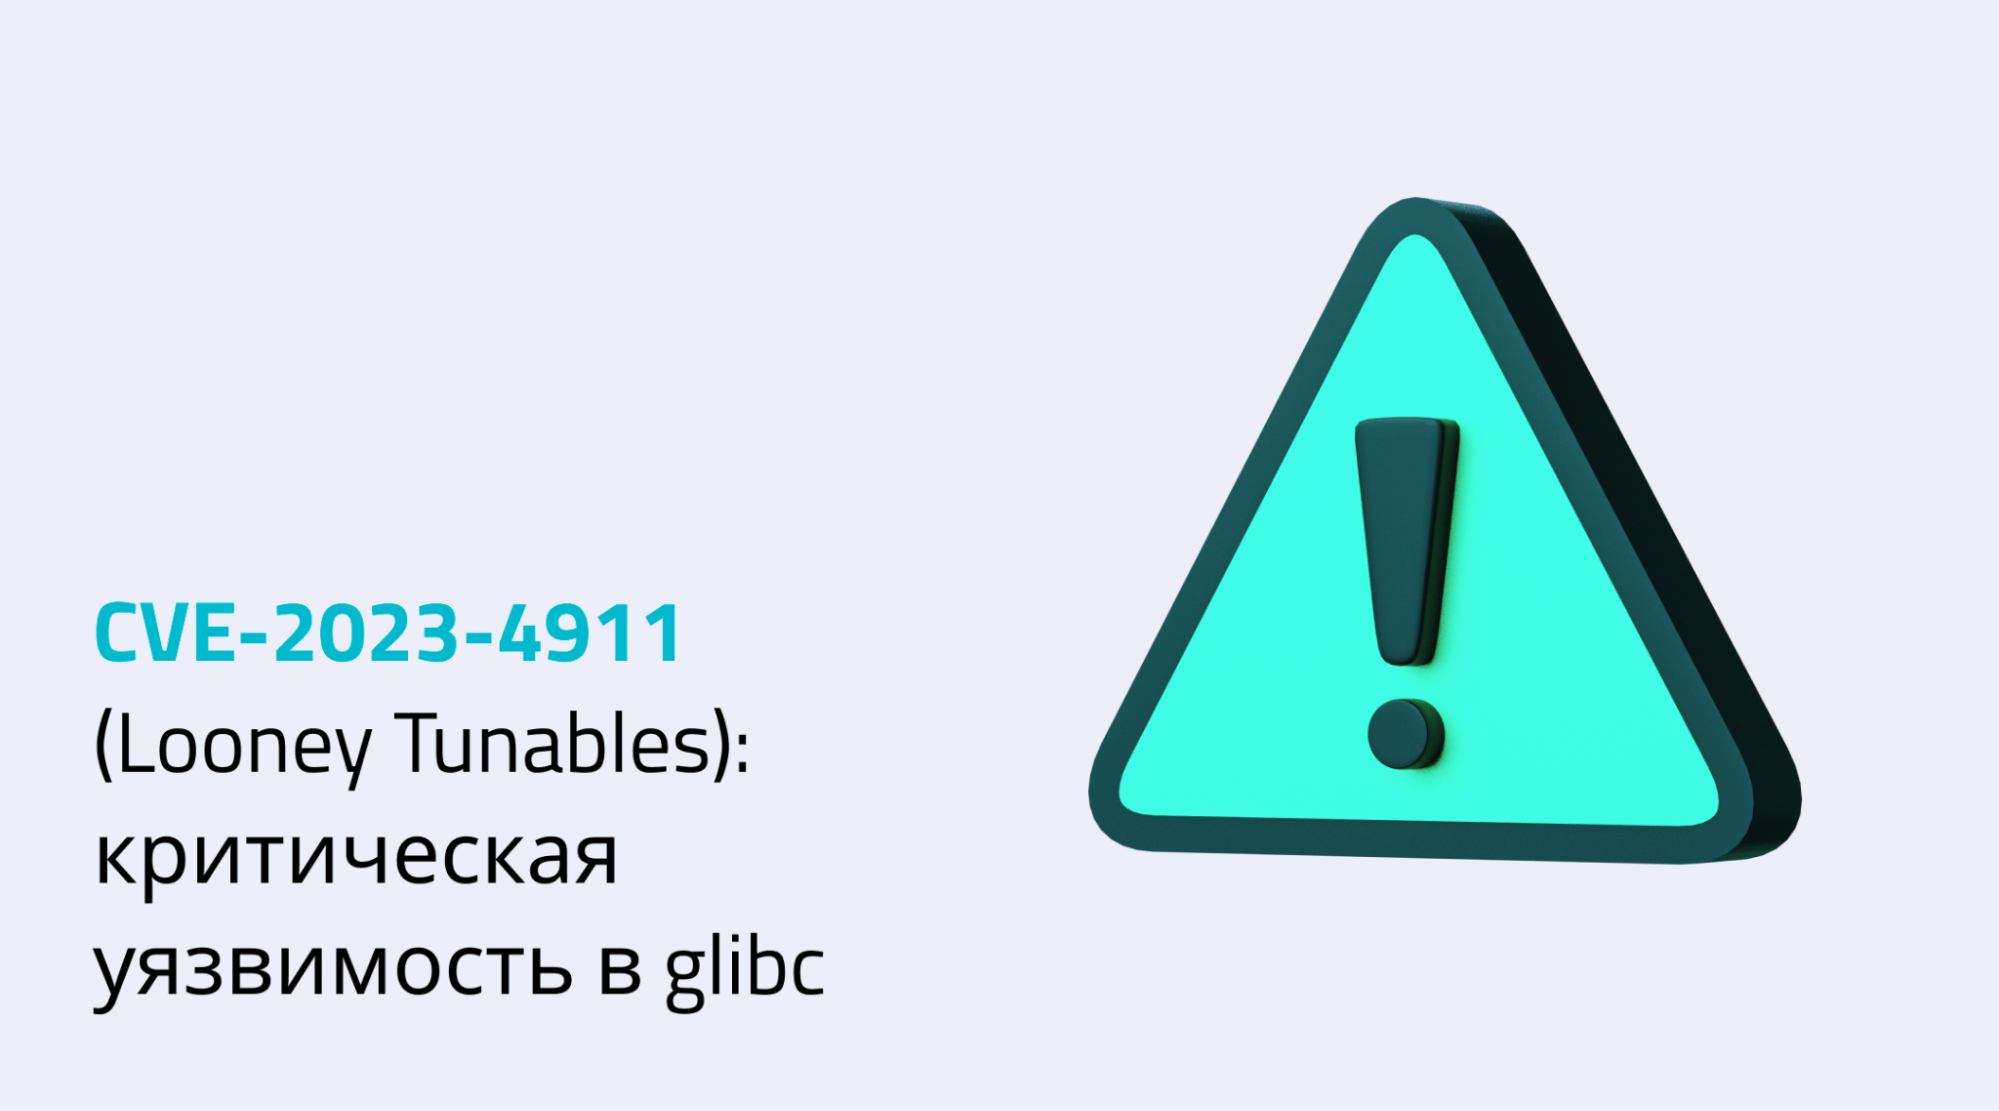 Уязвимость CVE-2023-4911 (Looney Tunables) в glibc